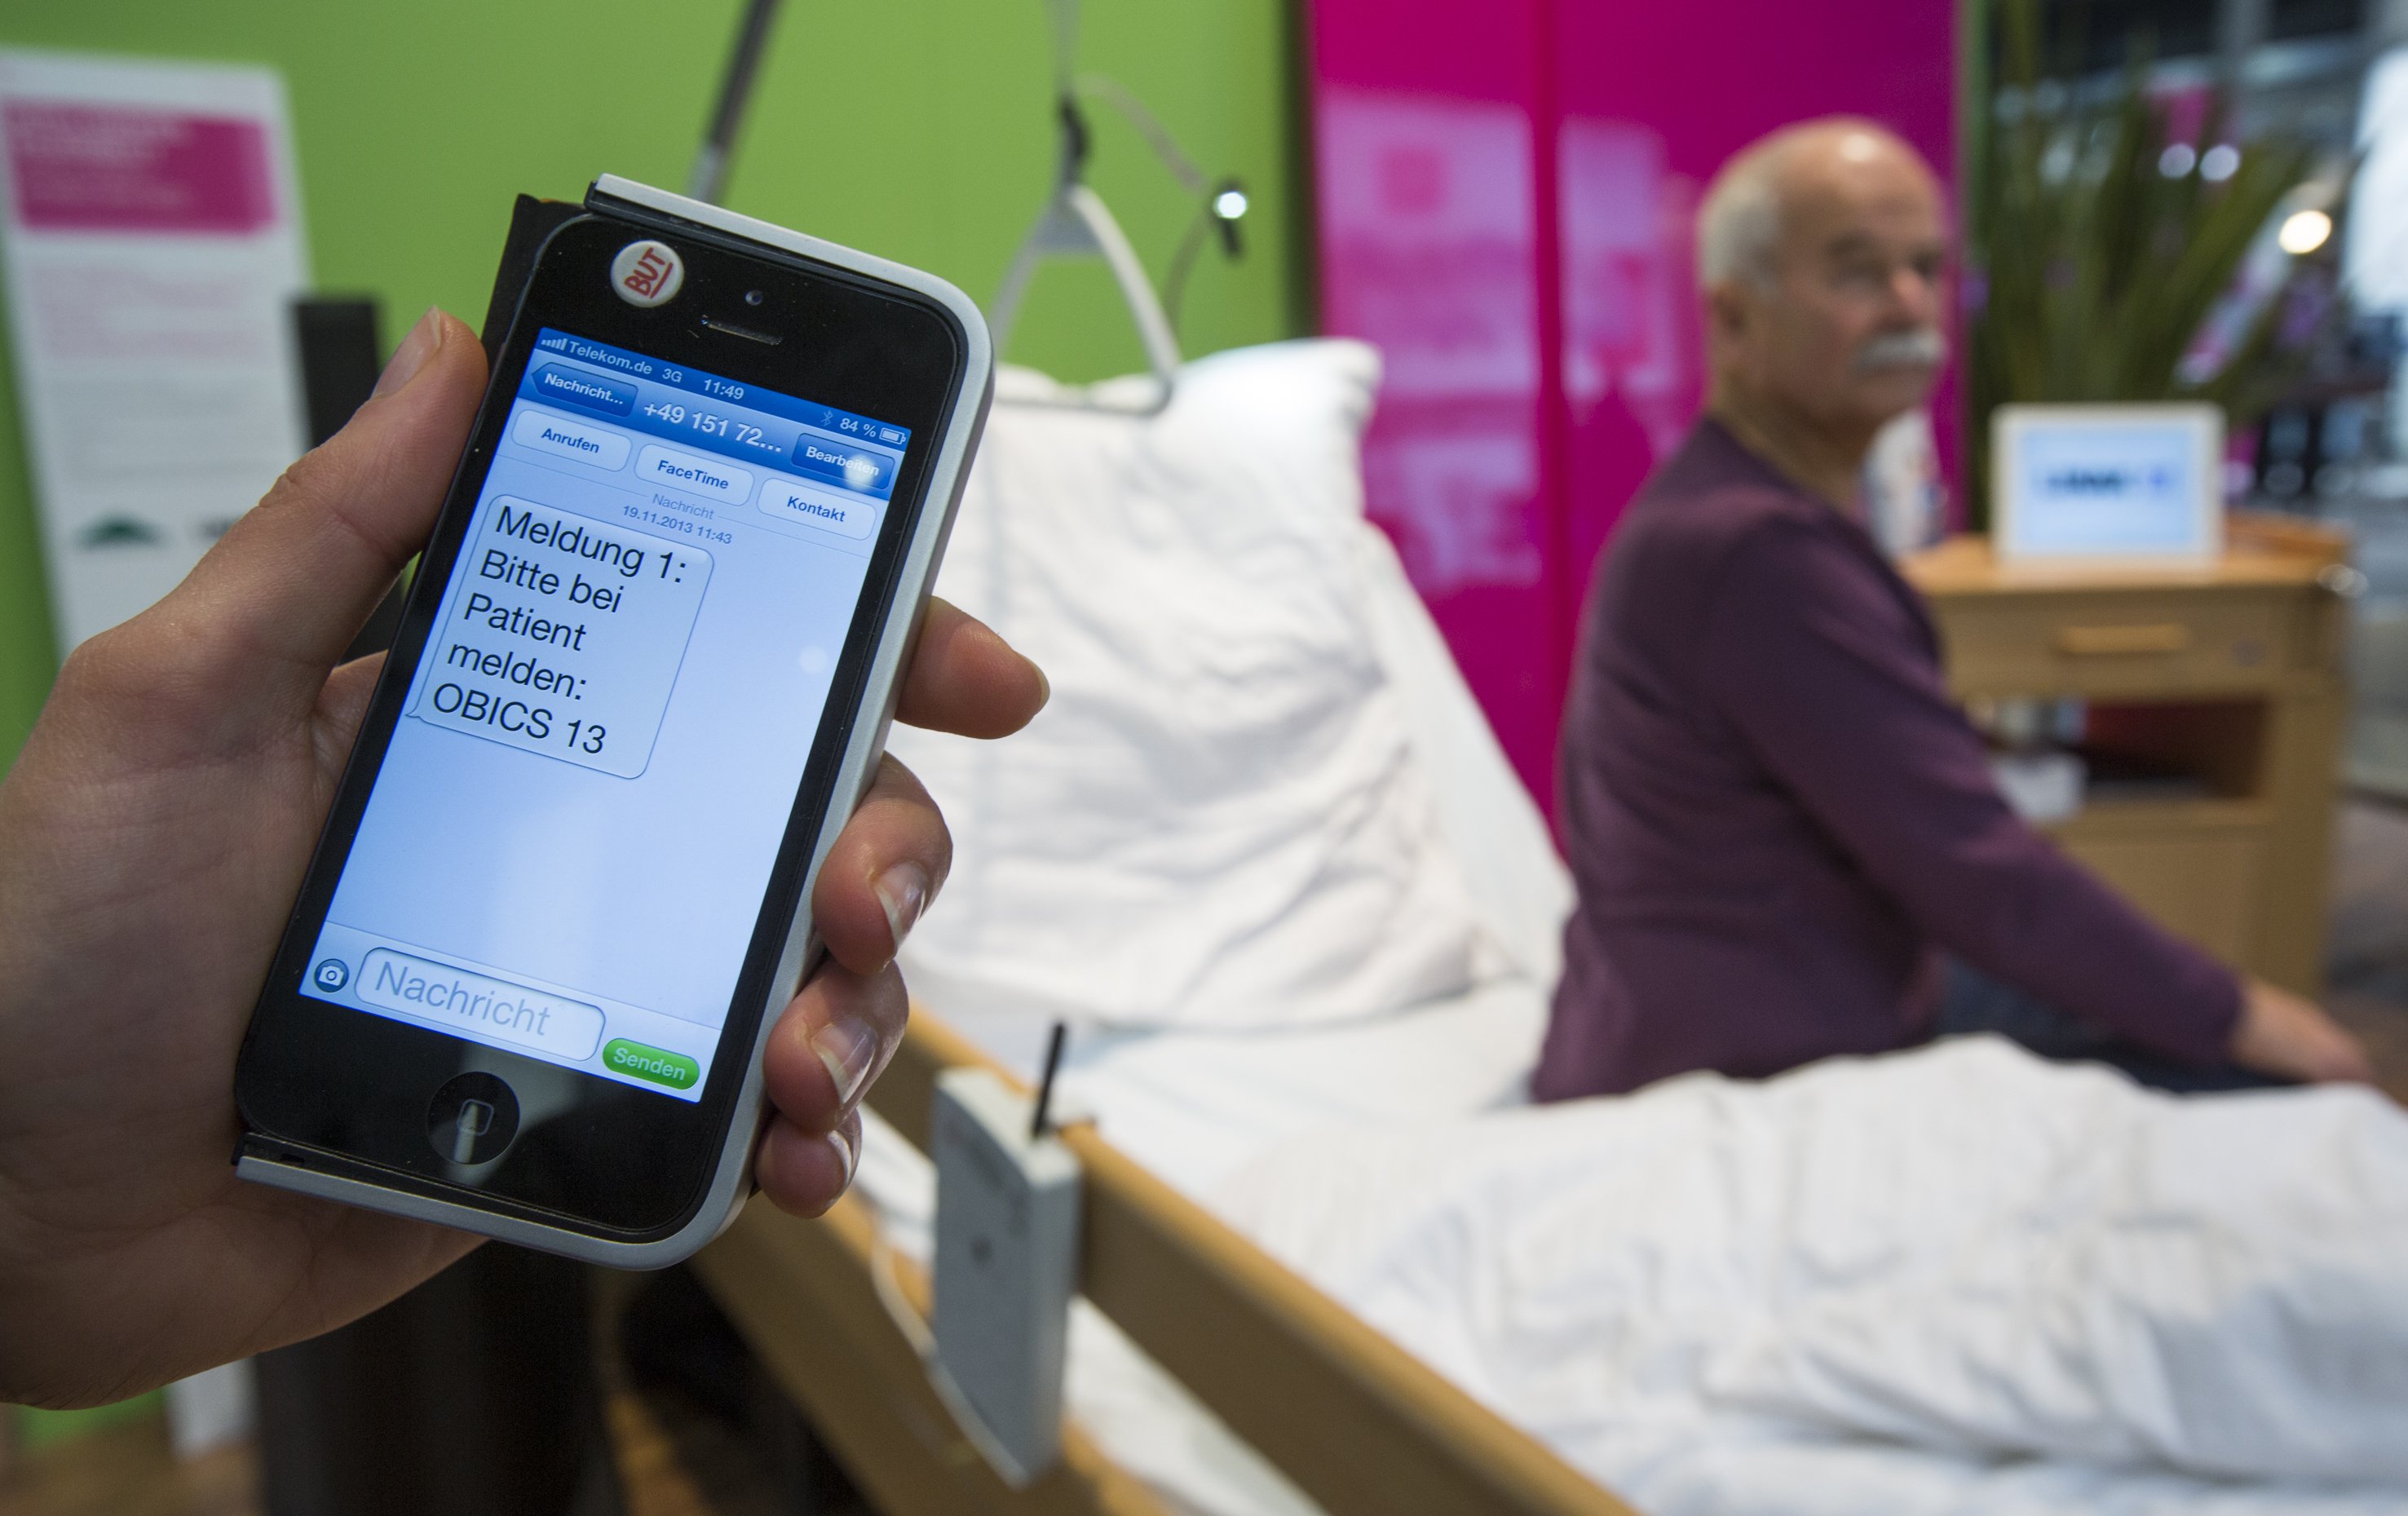 Ein vernetztes Bett merkt über Sensoren, wenn ein pflegebedürftiger Mensch nachts ohne Hilfe das Bett verlassen will und schaltet das Licht in dem Raum ein. Zudem wird eine Nachricht an das Rote Kreuz verschickt, das sich nach dem Befinden des Patienten erkundigen kann.